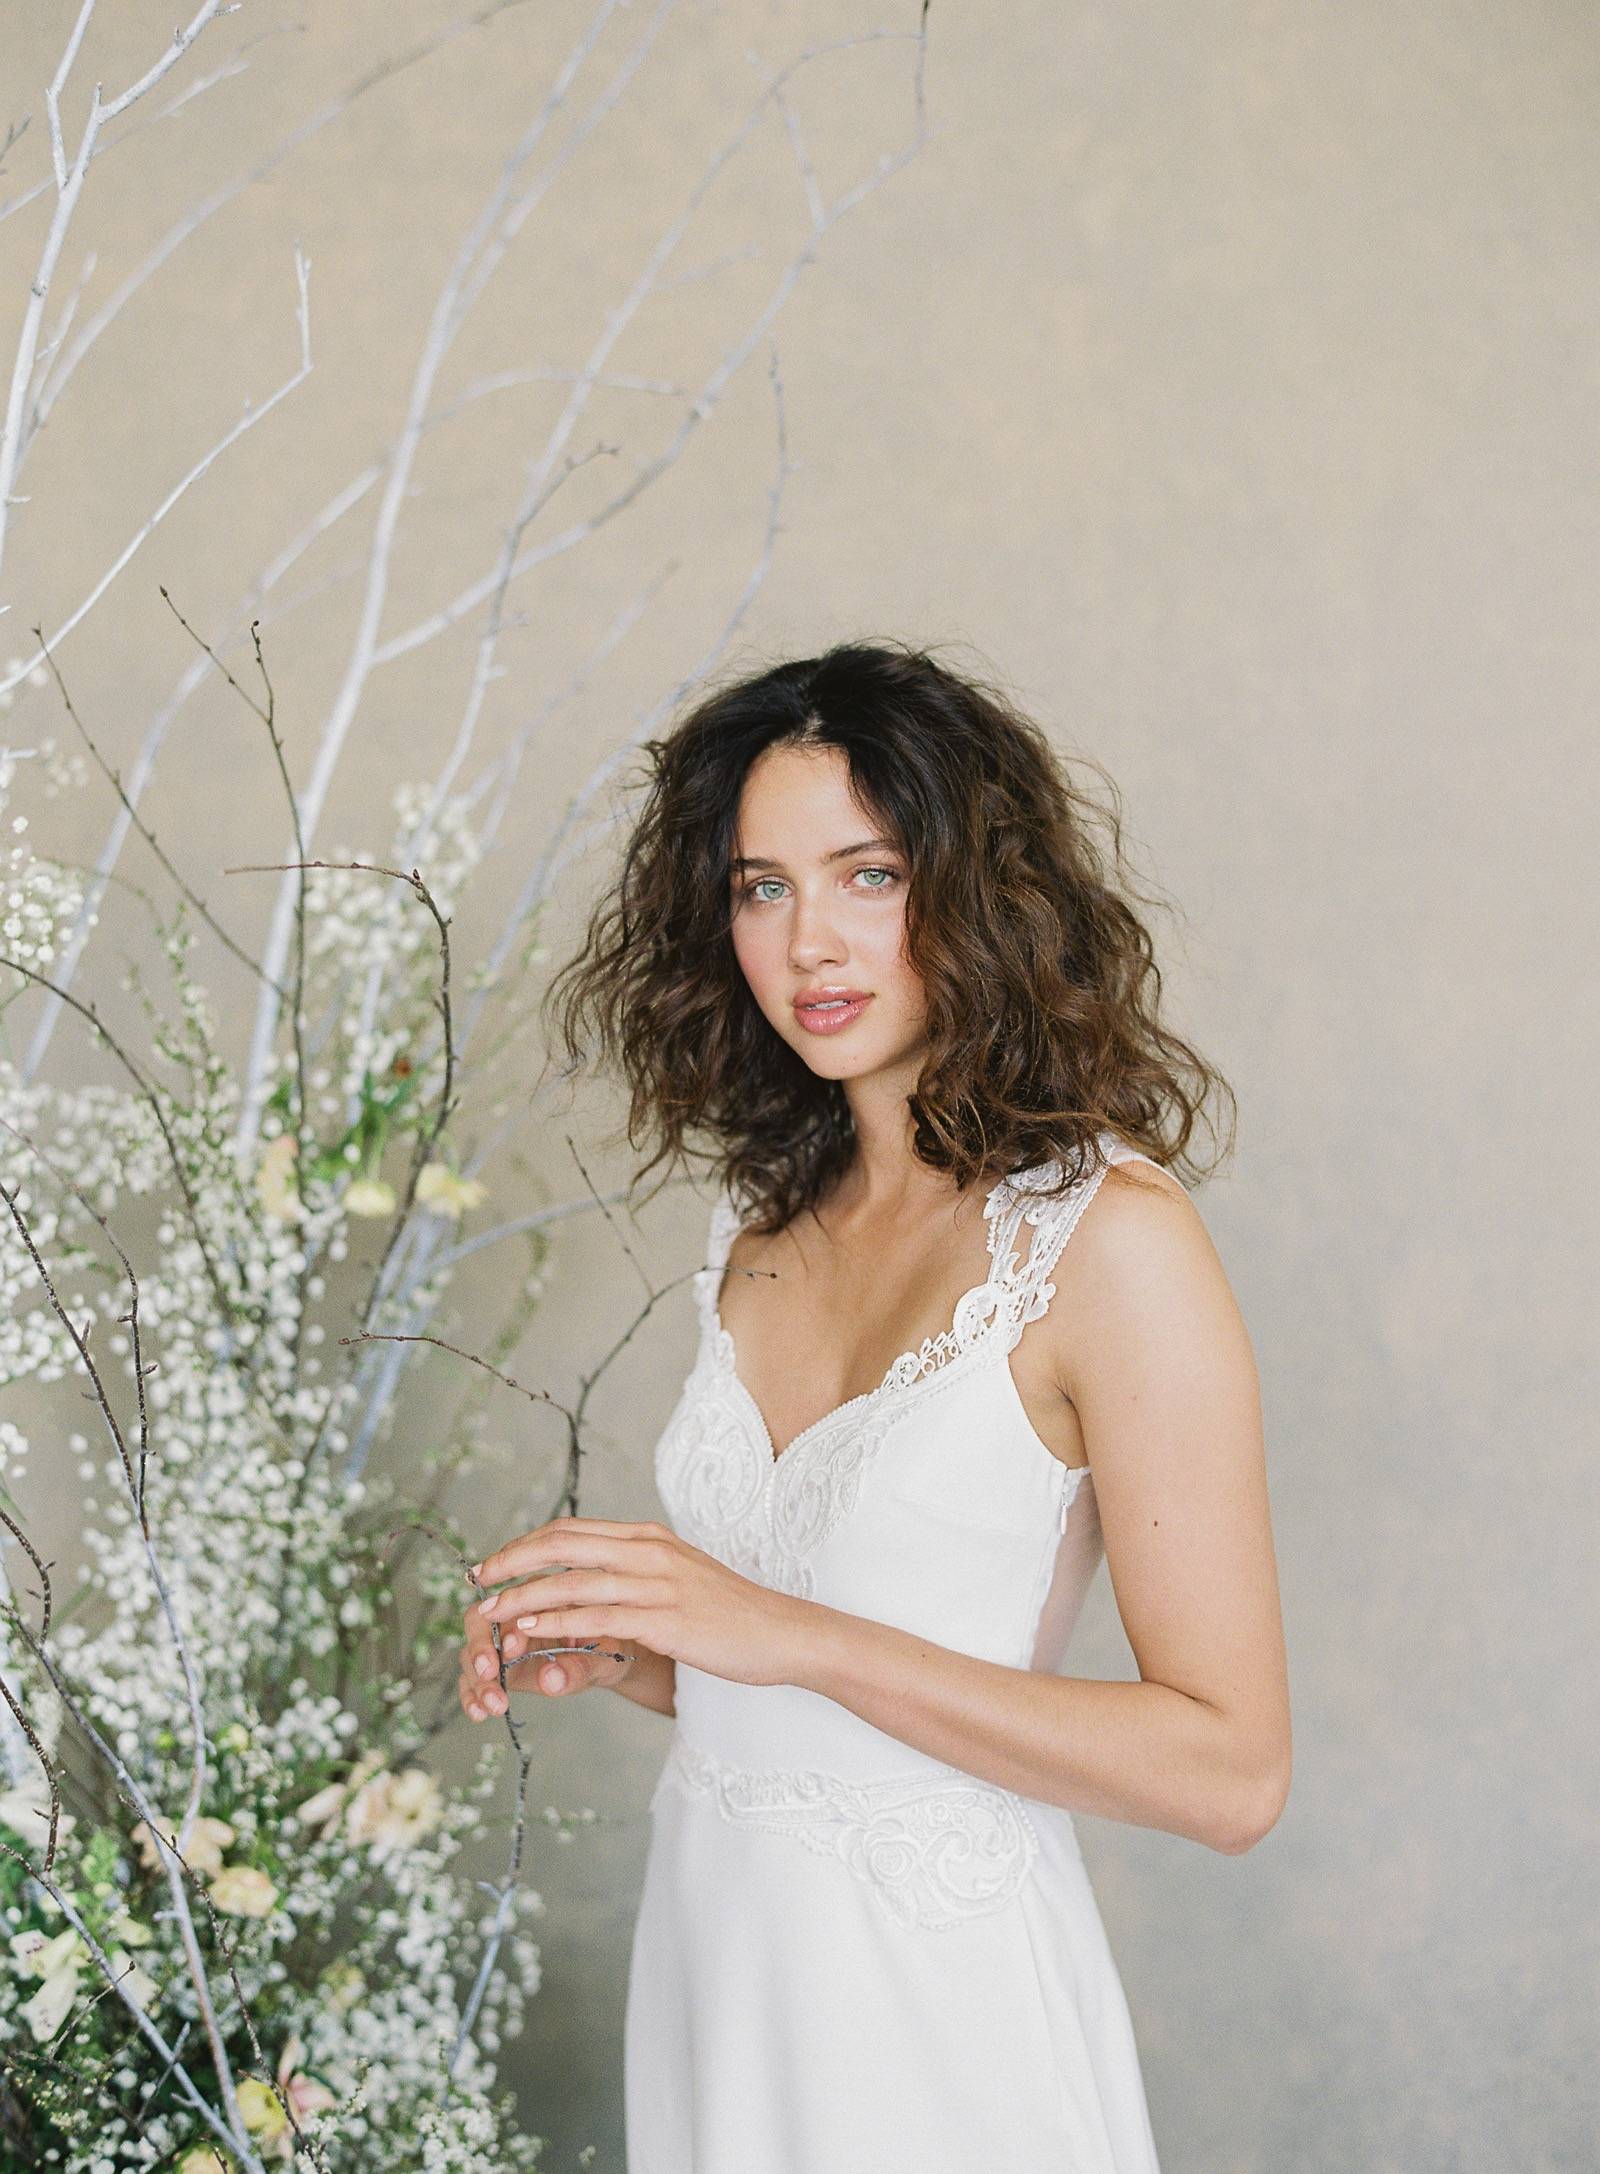 Claire Pettibone Spring 2019 Bridal Fashion Line